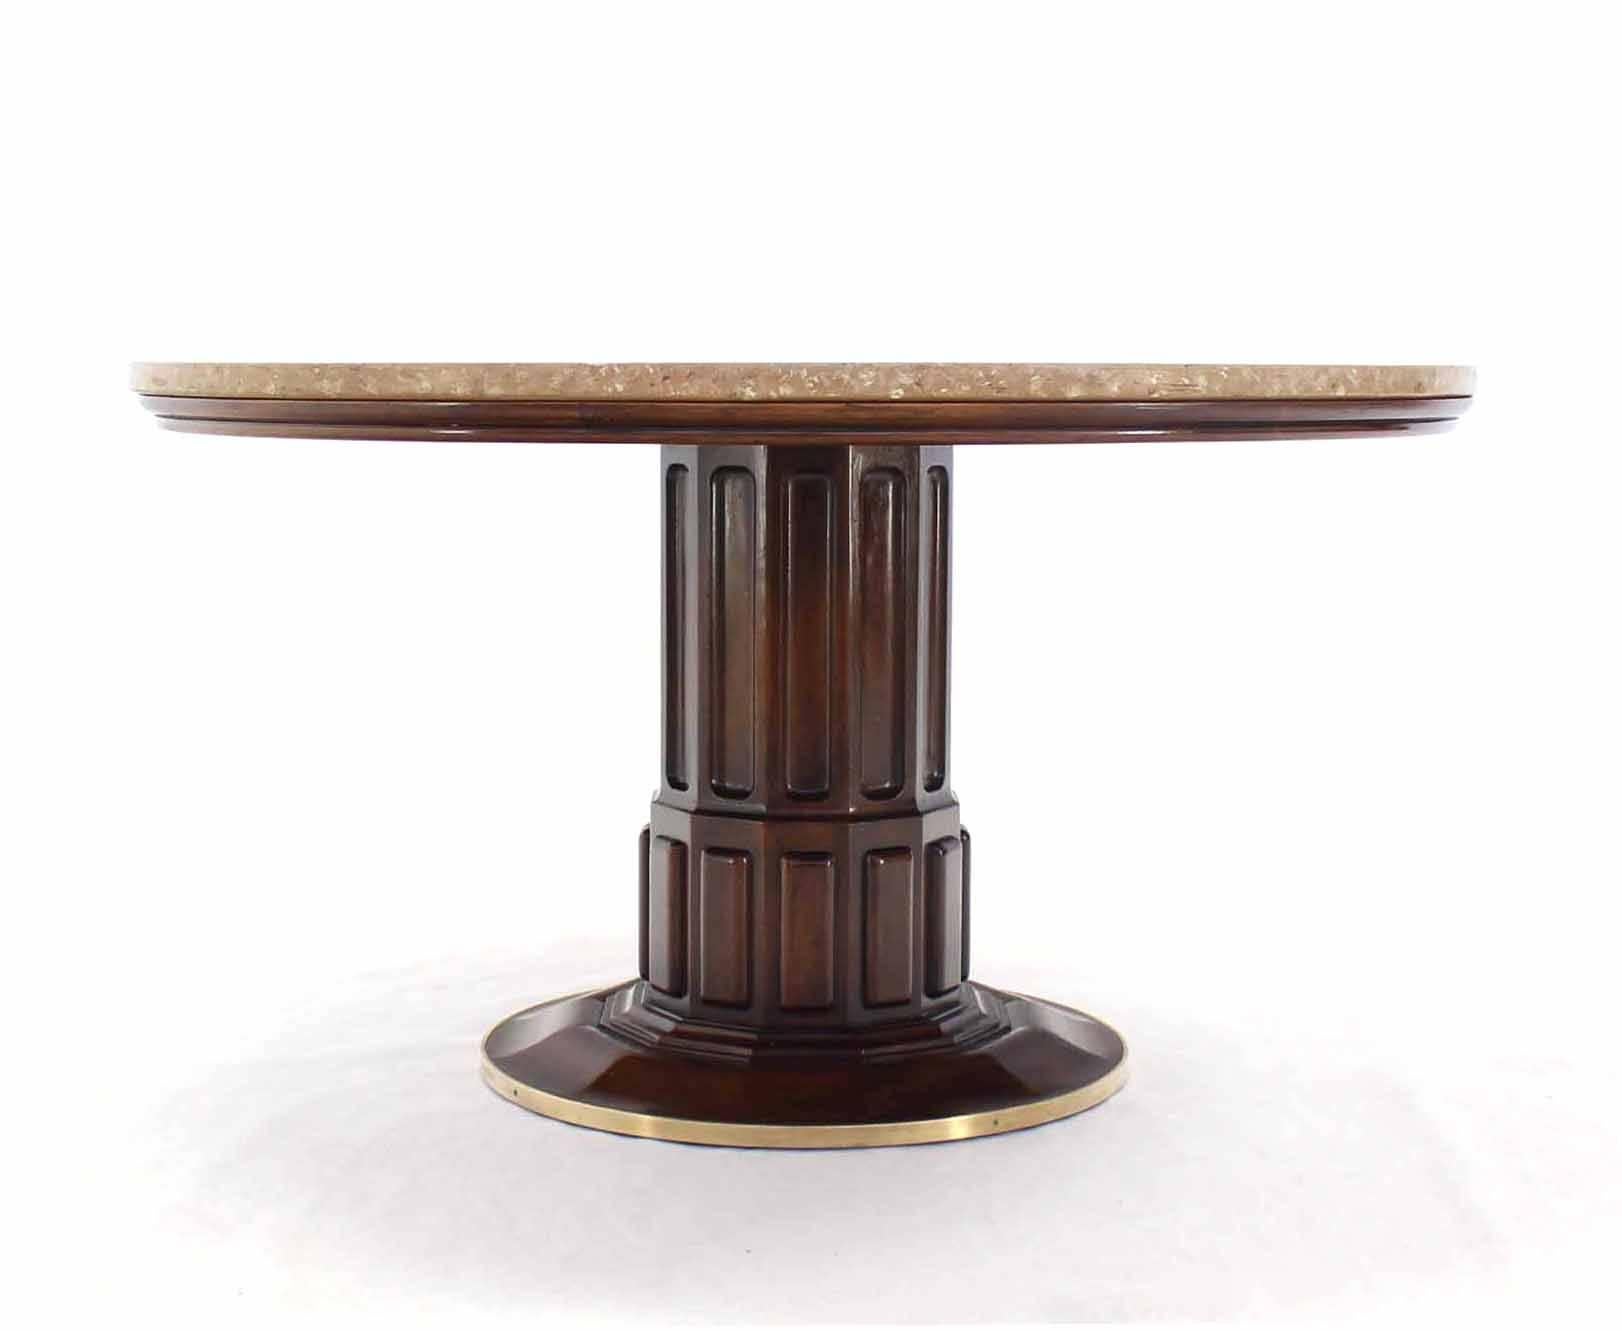 Schöner runder Spiel- oder Mitteltisch von John Widdicomb. Hervorragende handwerkliche Qualität und Designdetails. Die Höhe beträgt 26